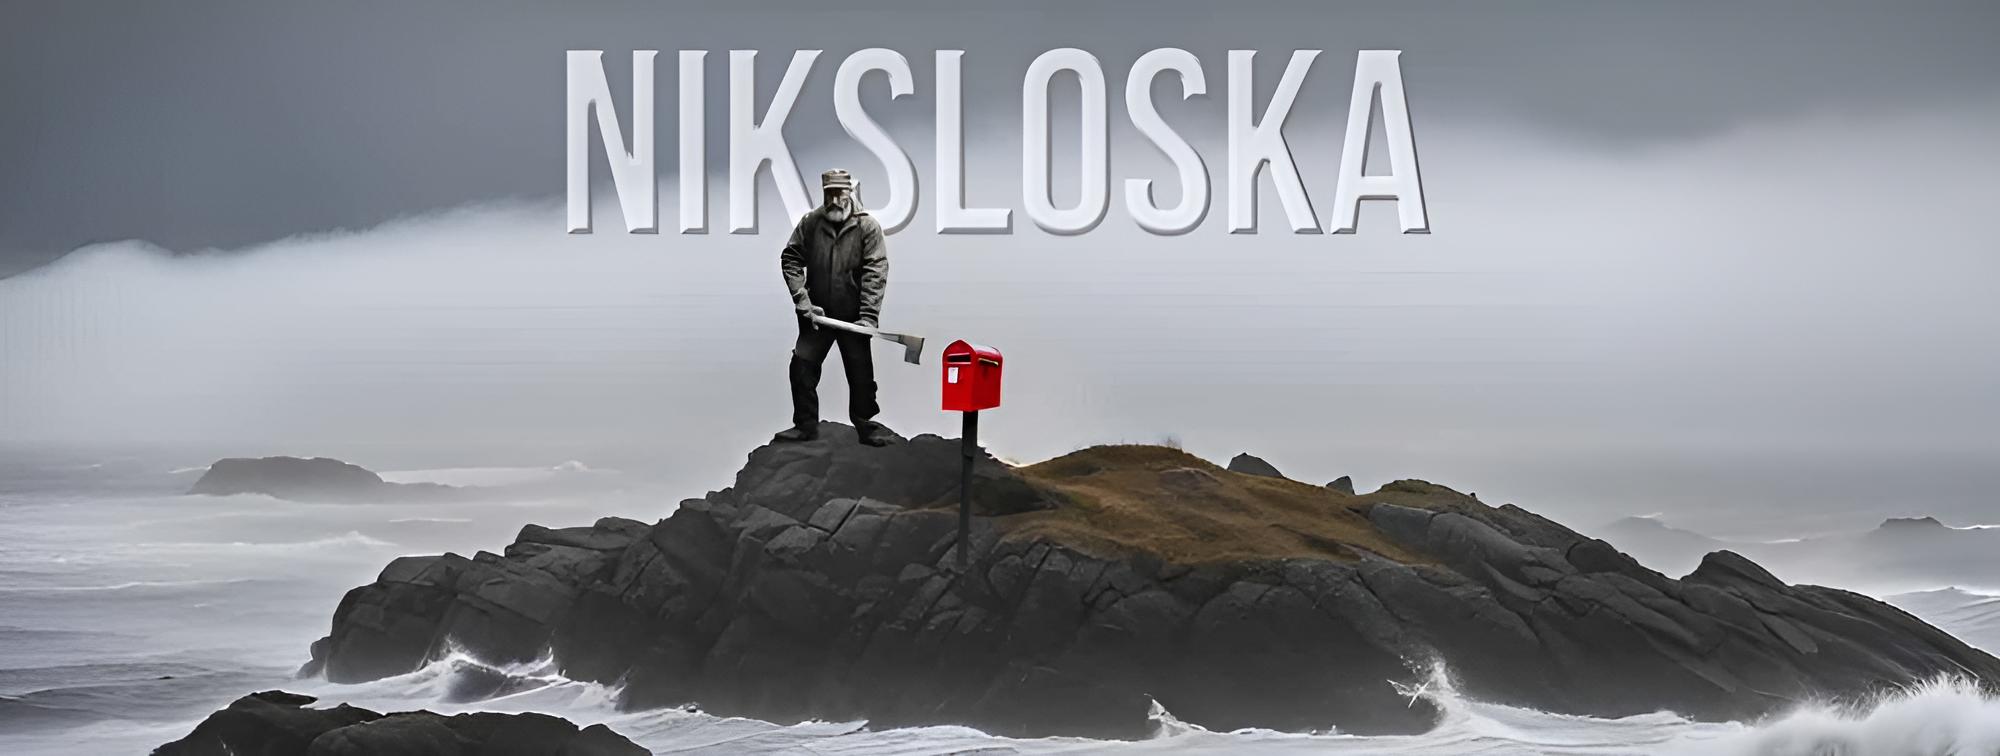 Hörspiel-Cover: Niksloska - zeigt einen Mann mit Vorschlaghammer vor einem roten Briefkasten auf einer winzigen Insel in rauher See